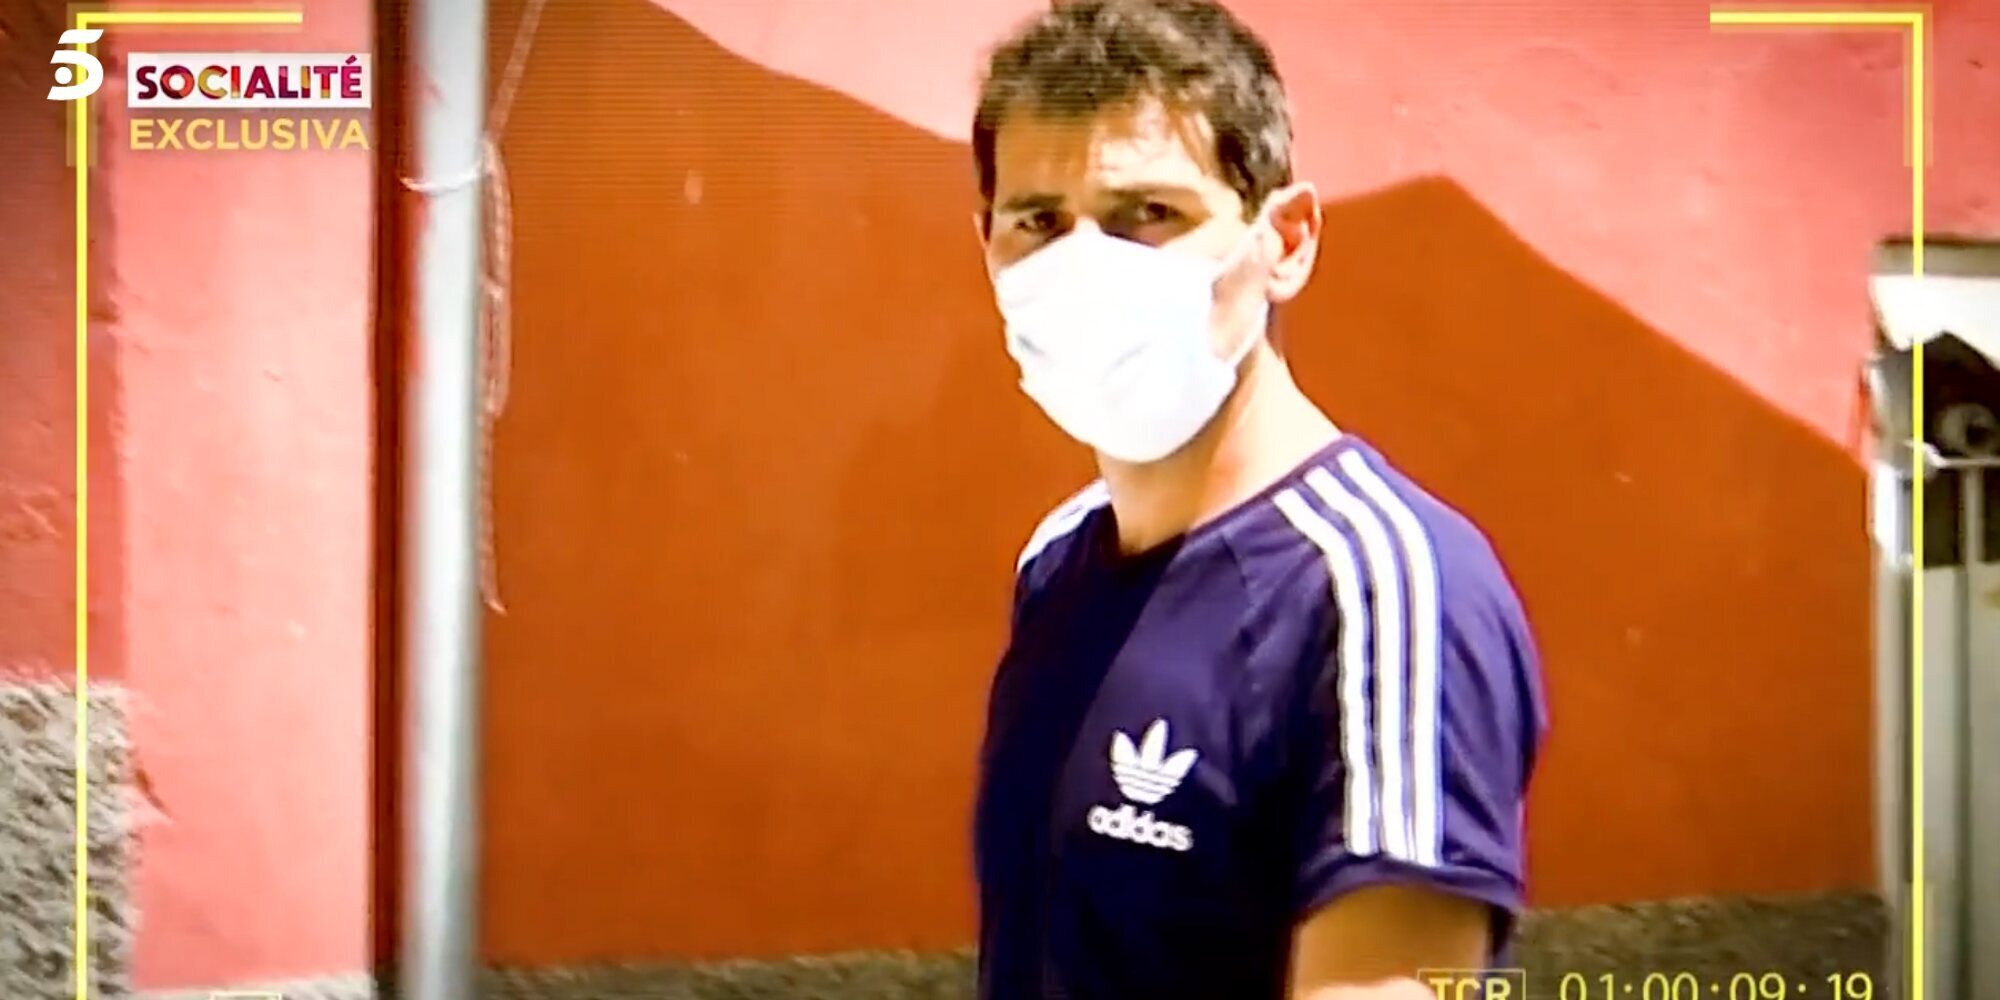 El equipo de 'Socialité' vive un tenso momento con Iker Casillas en su pueblo: "Déjame tranquilo"